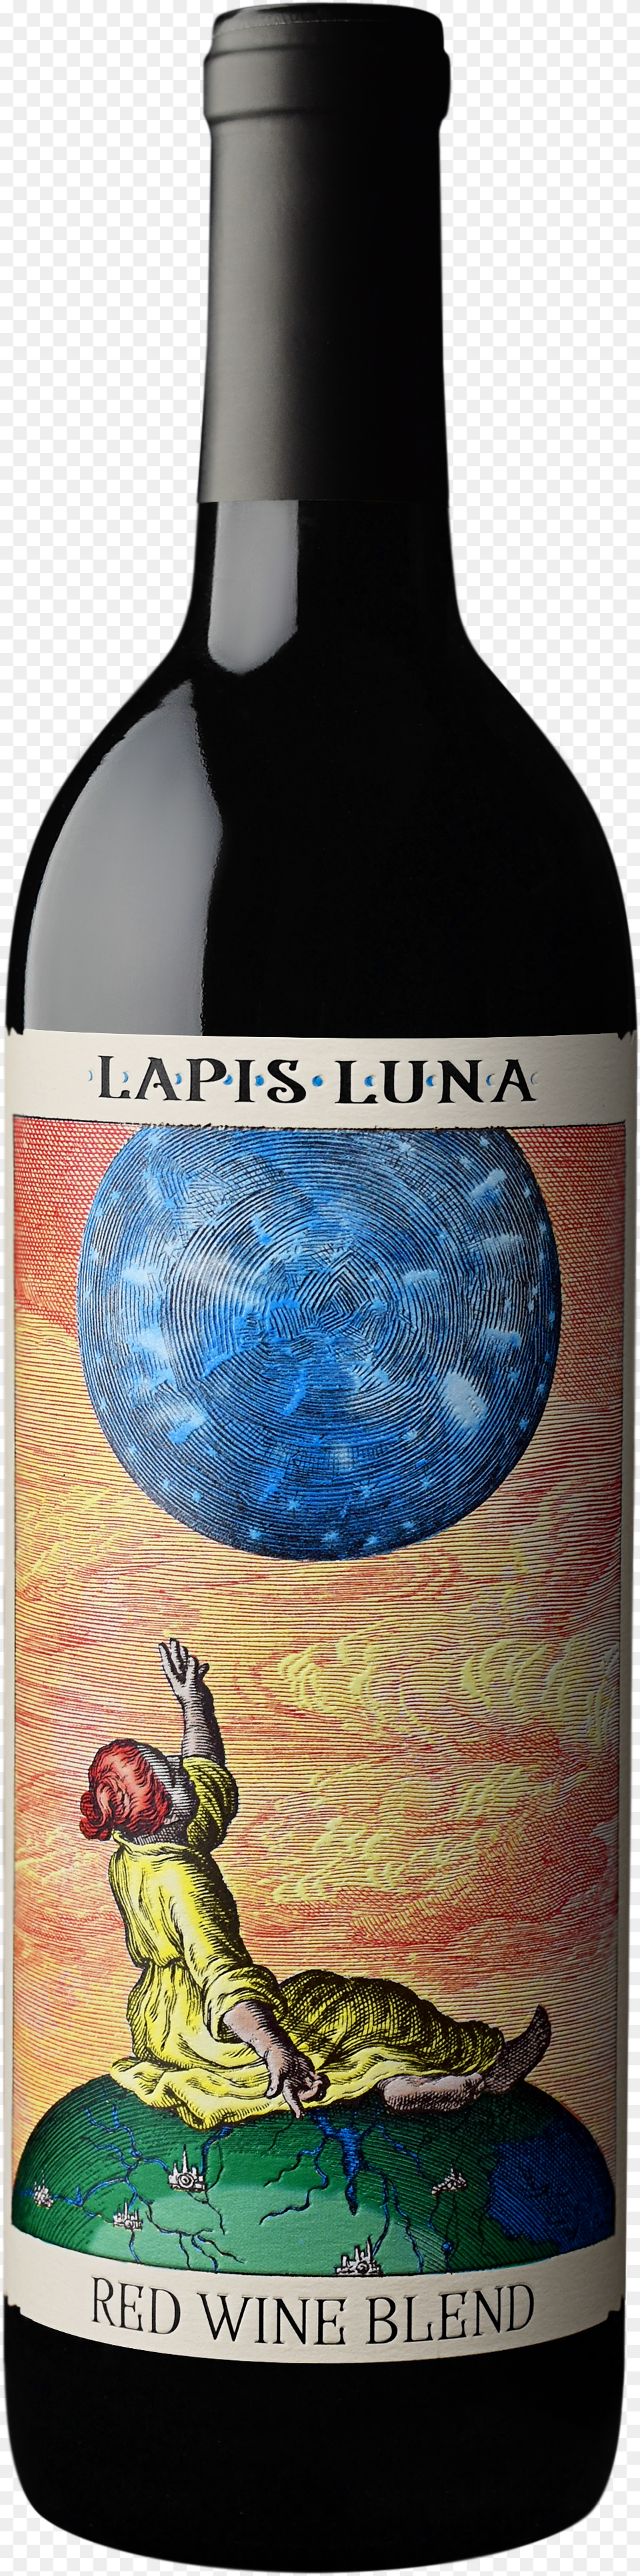 Lapis Luna Wine Png